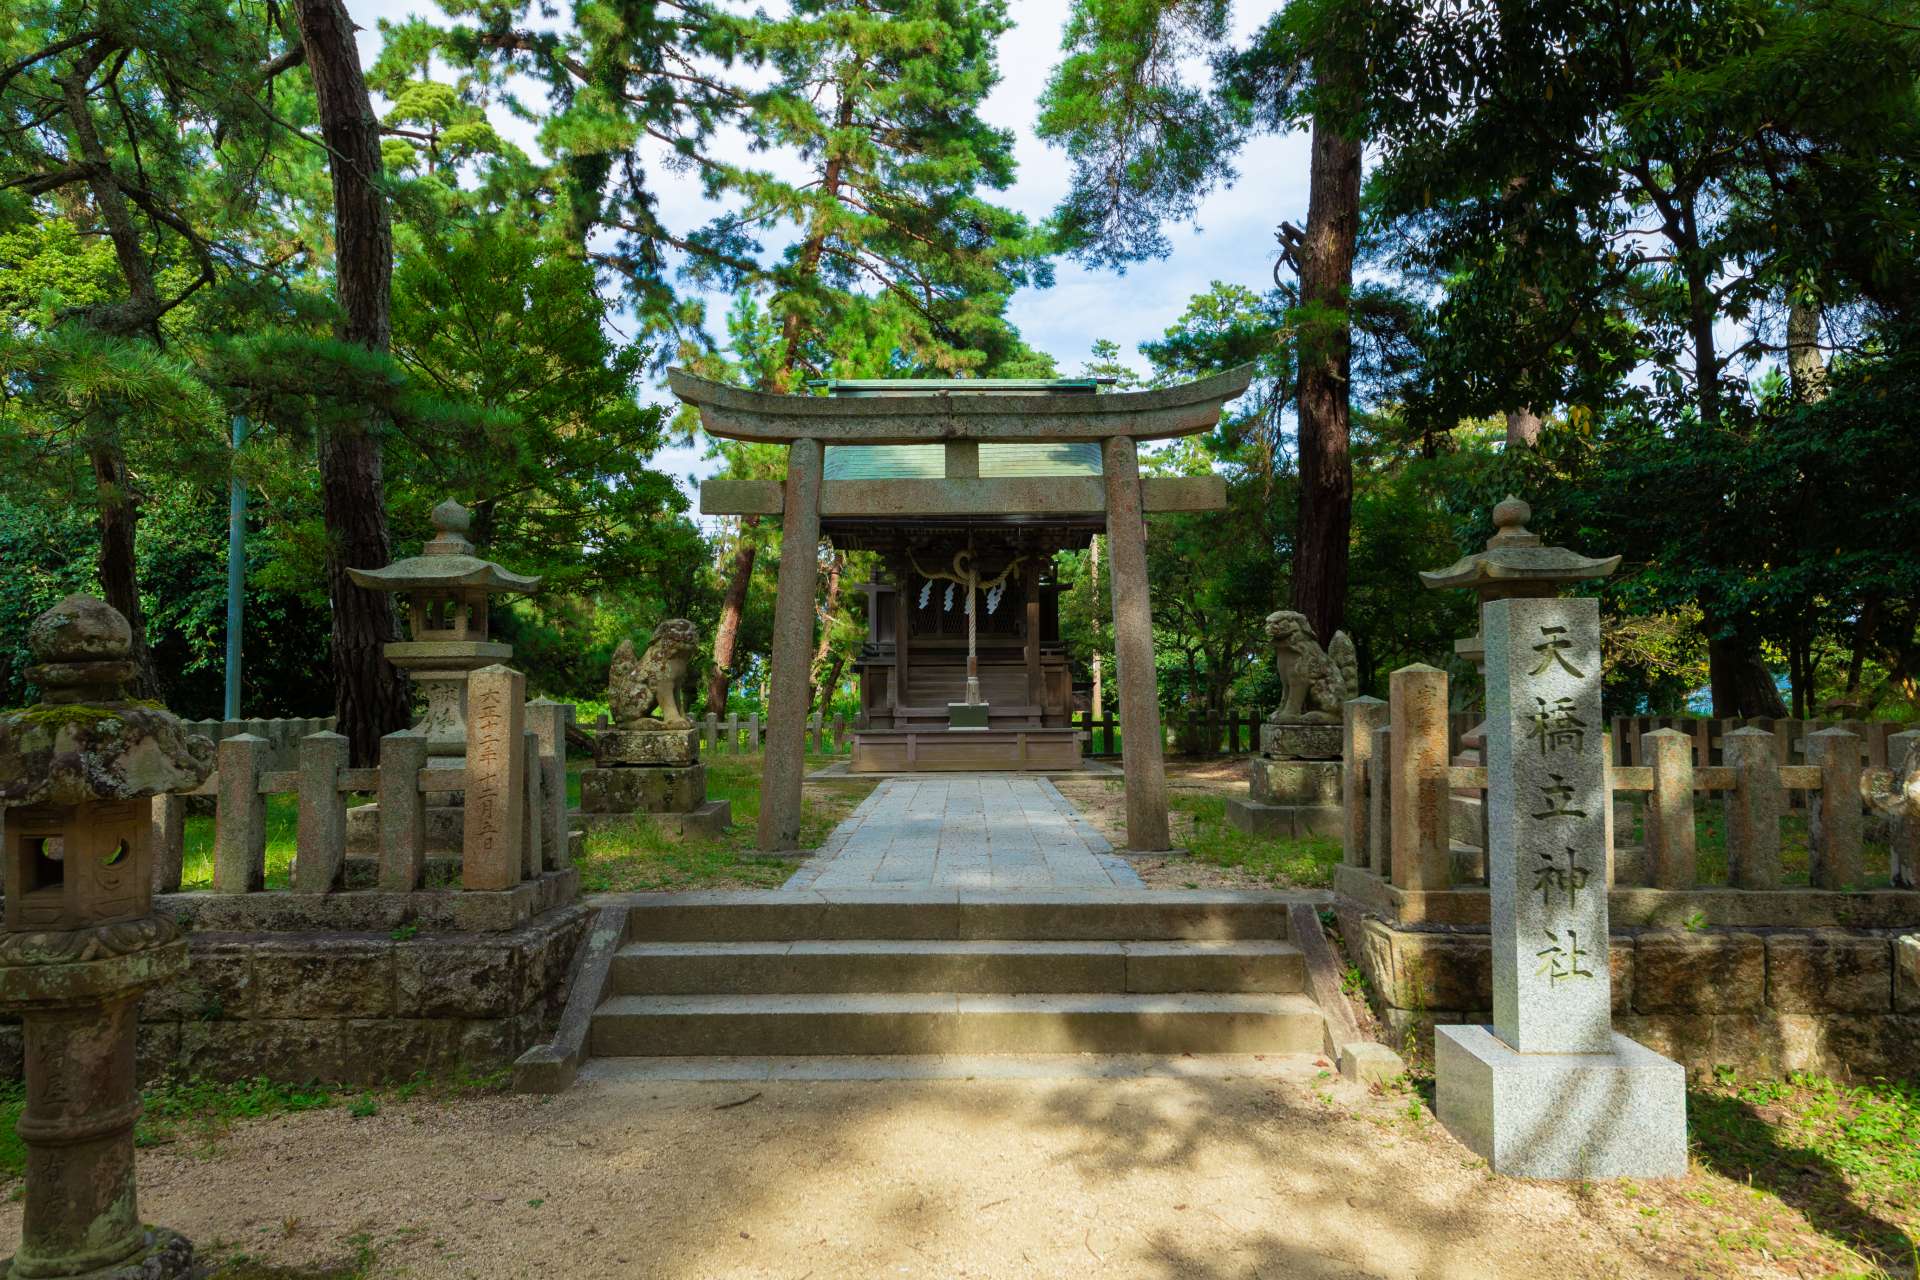 中途附近有天桥立神社，是许下浪漫愿望的热门场所。